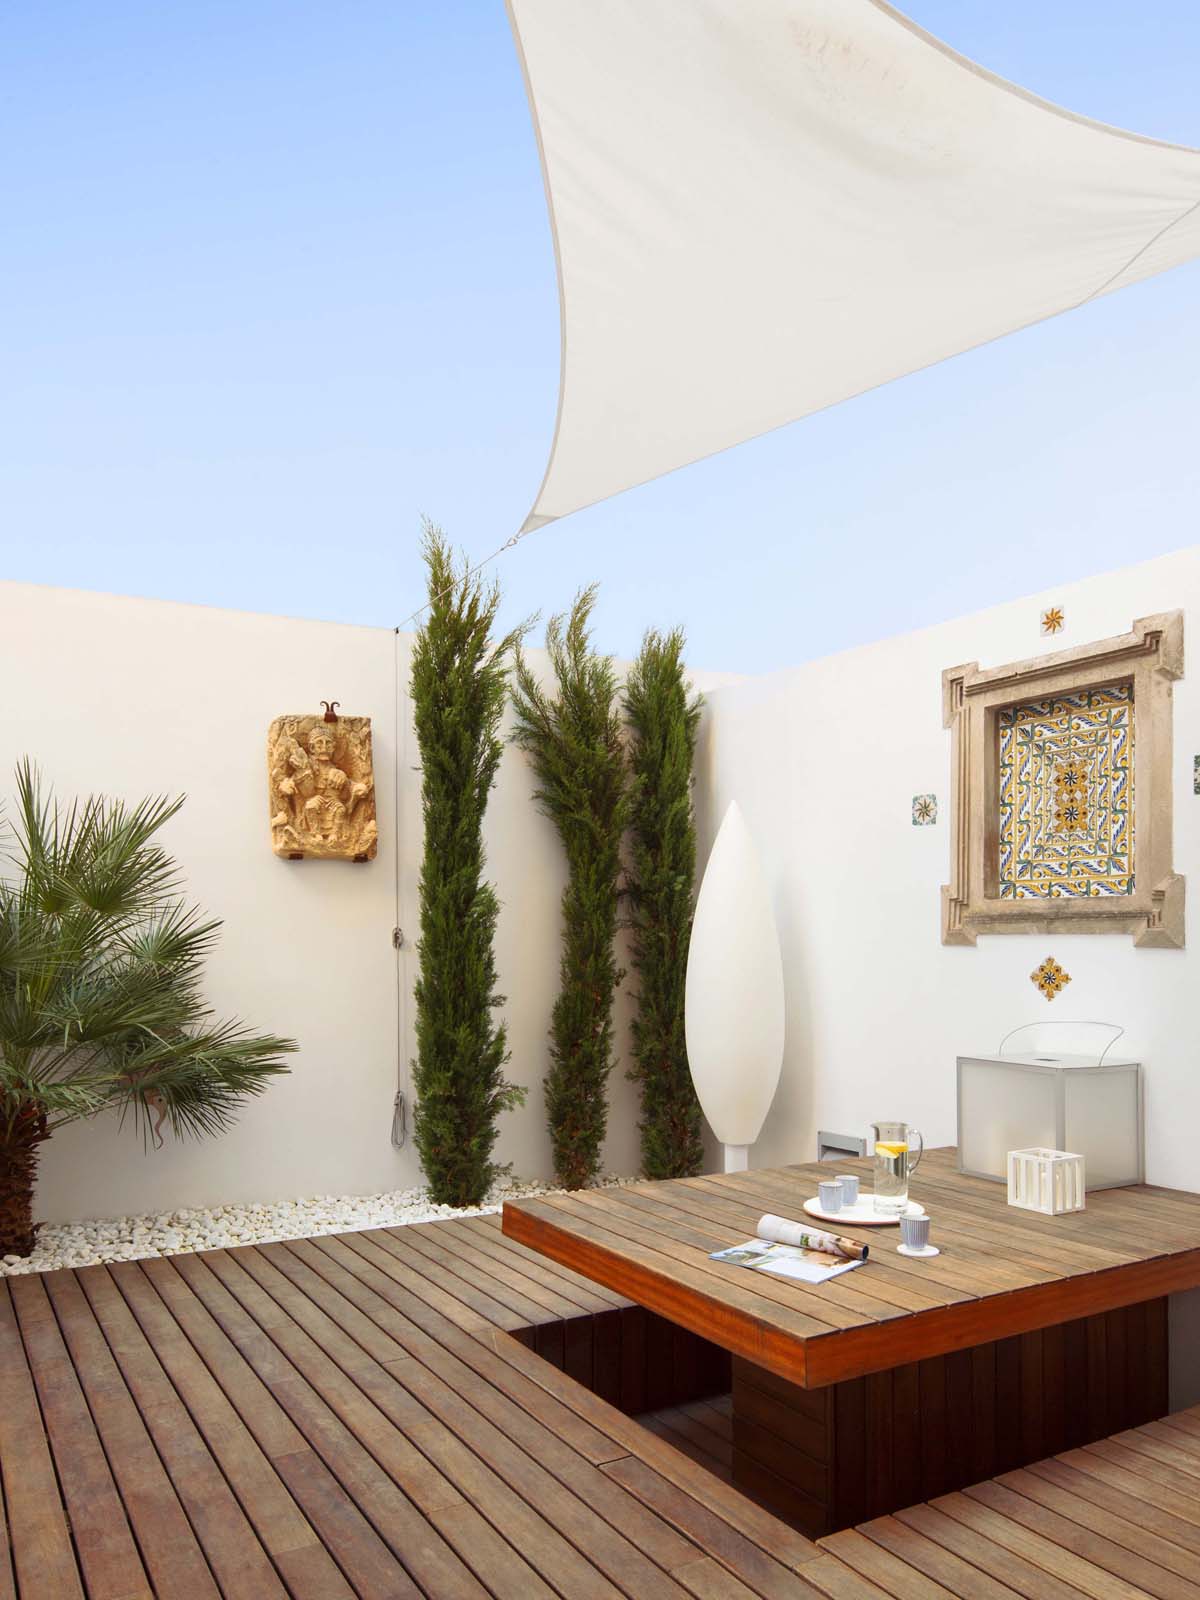 Apartment in Palma by OLARQ Osvaldo Luppi Architects